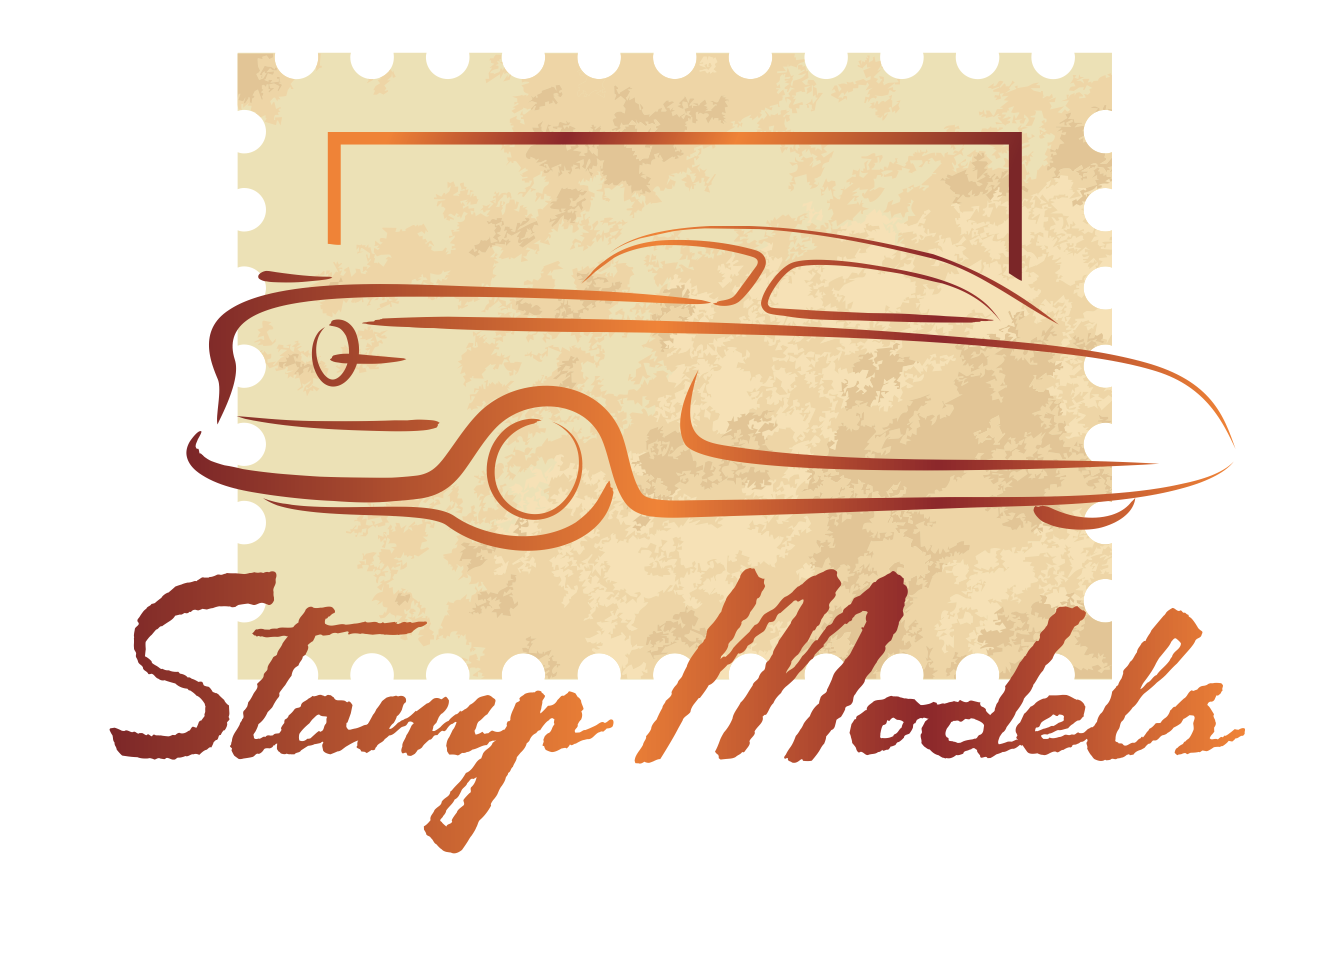 Stamp Models